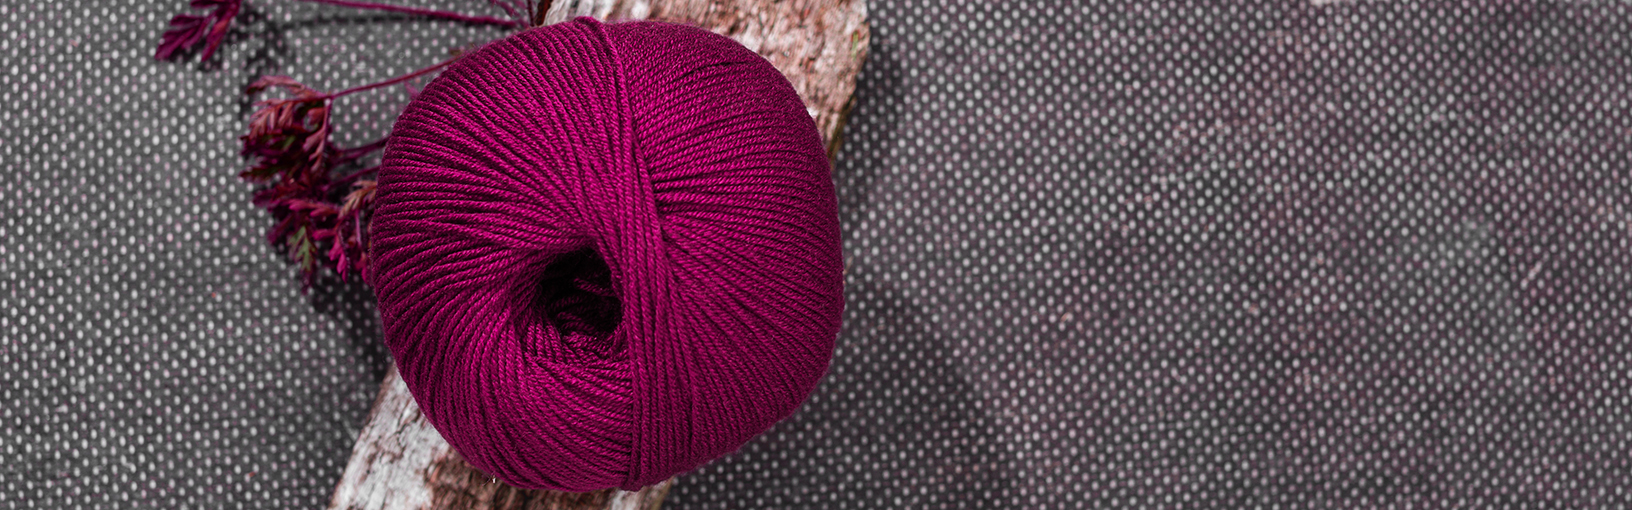 Visokokvalitetne pređe za pletenje, kukičanje i filc Lana Grossa Vune | Bobbelprediva